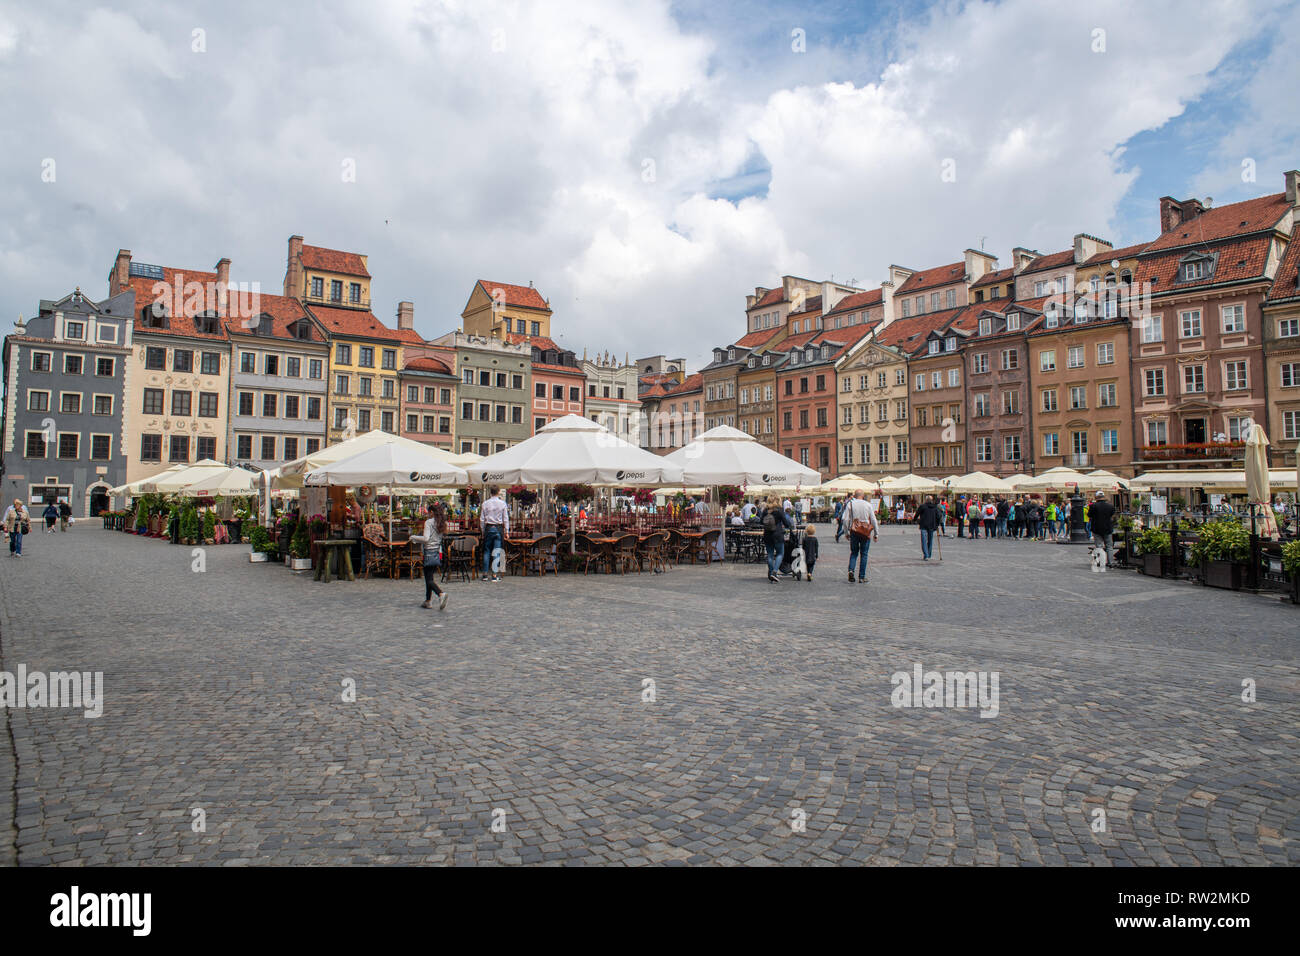 Plano amplio de la plaza del mercado de Varsovia, Polonia Foto de stock